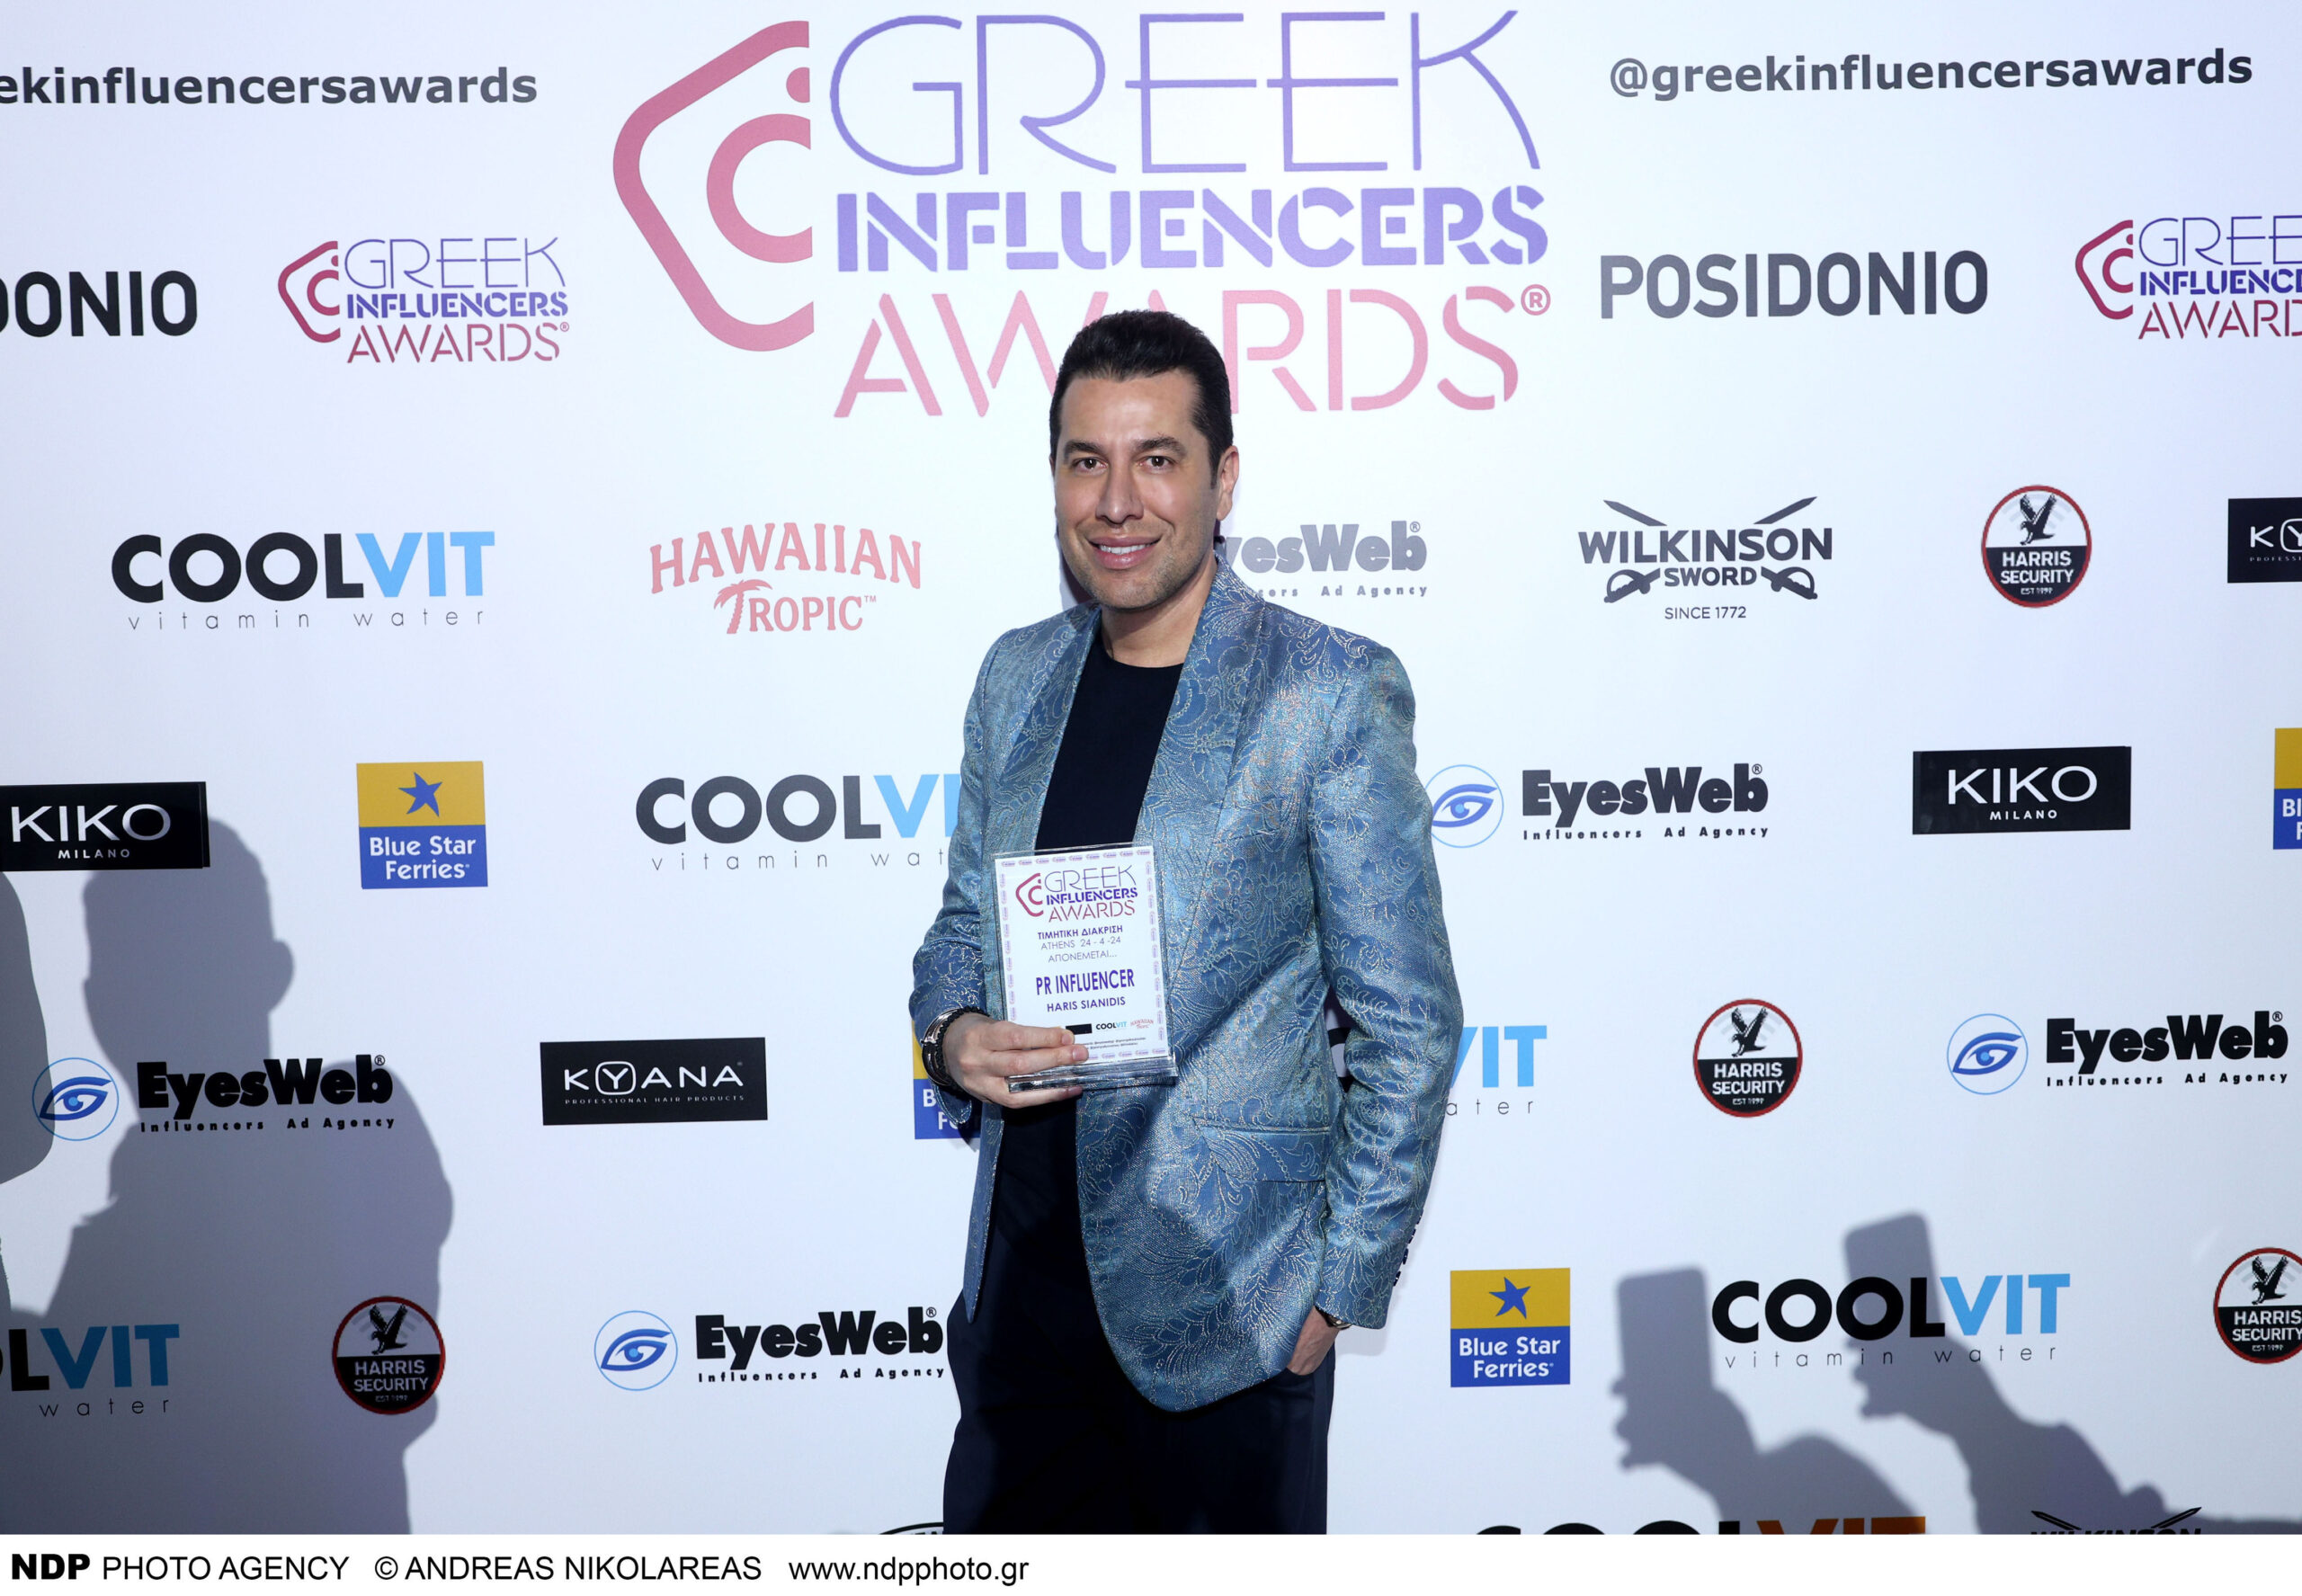 Ο ιδρυτής & CEO της “Beautiful People Pr” Events Χάρης Σιανίδης βραβέυτηκε ως “Pr Influencer” της χρονιάς στα “Greek Influencers Awards”!